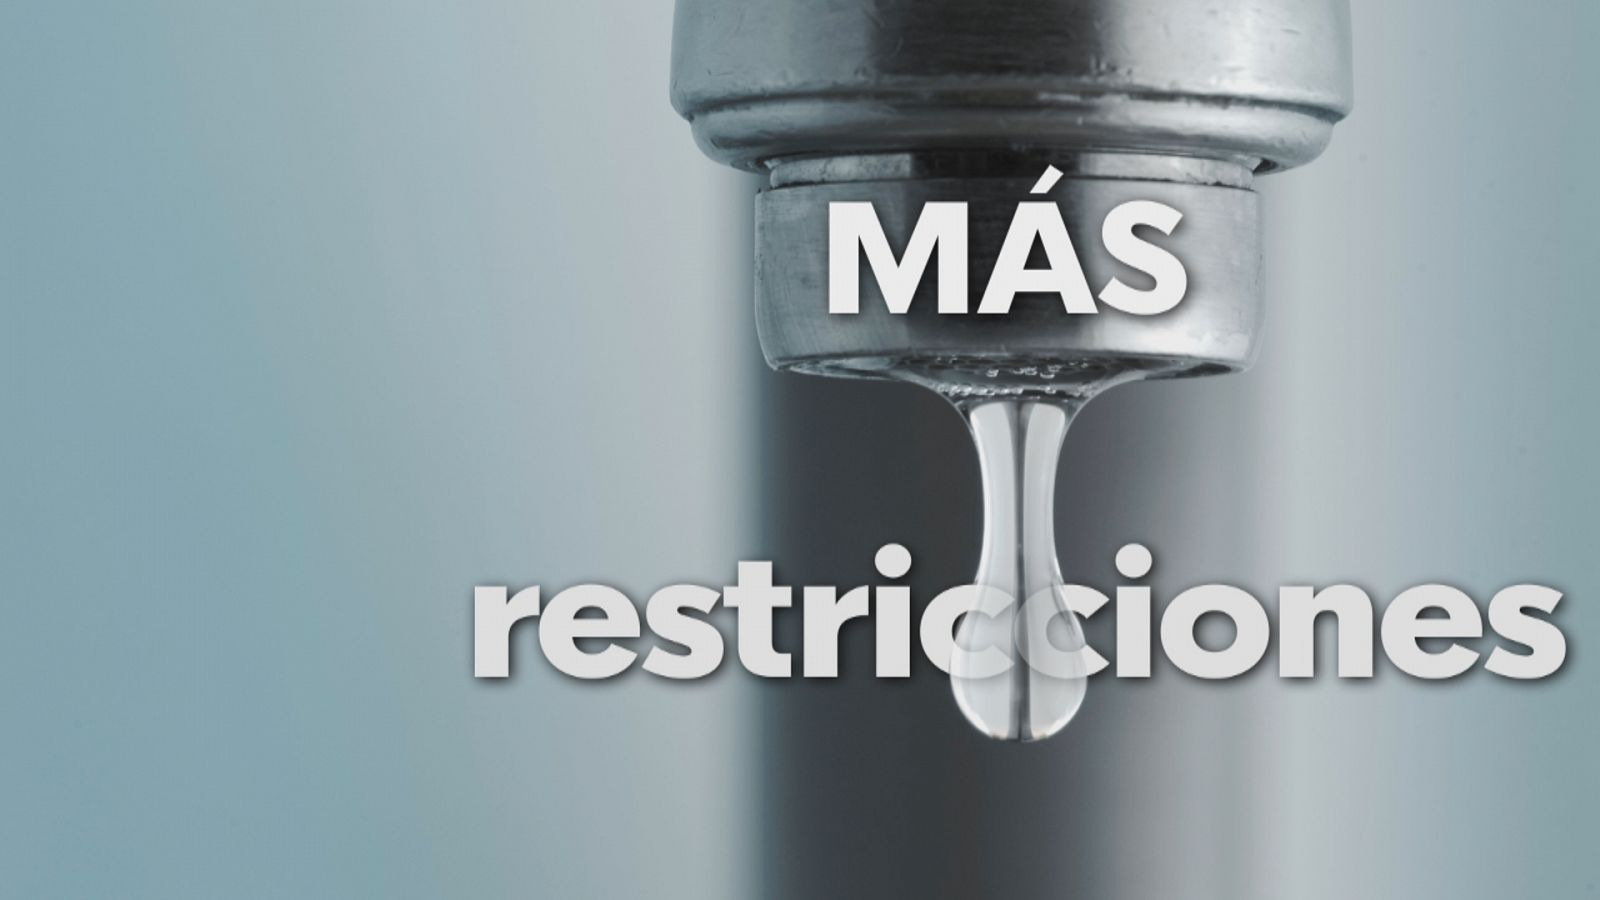 Restricciones de agua debido a la sequía - Ver ahora